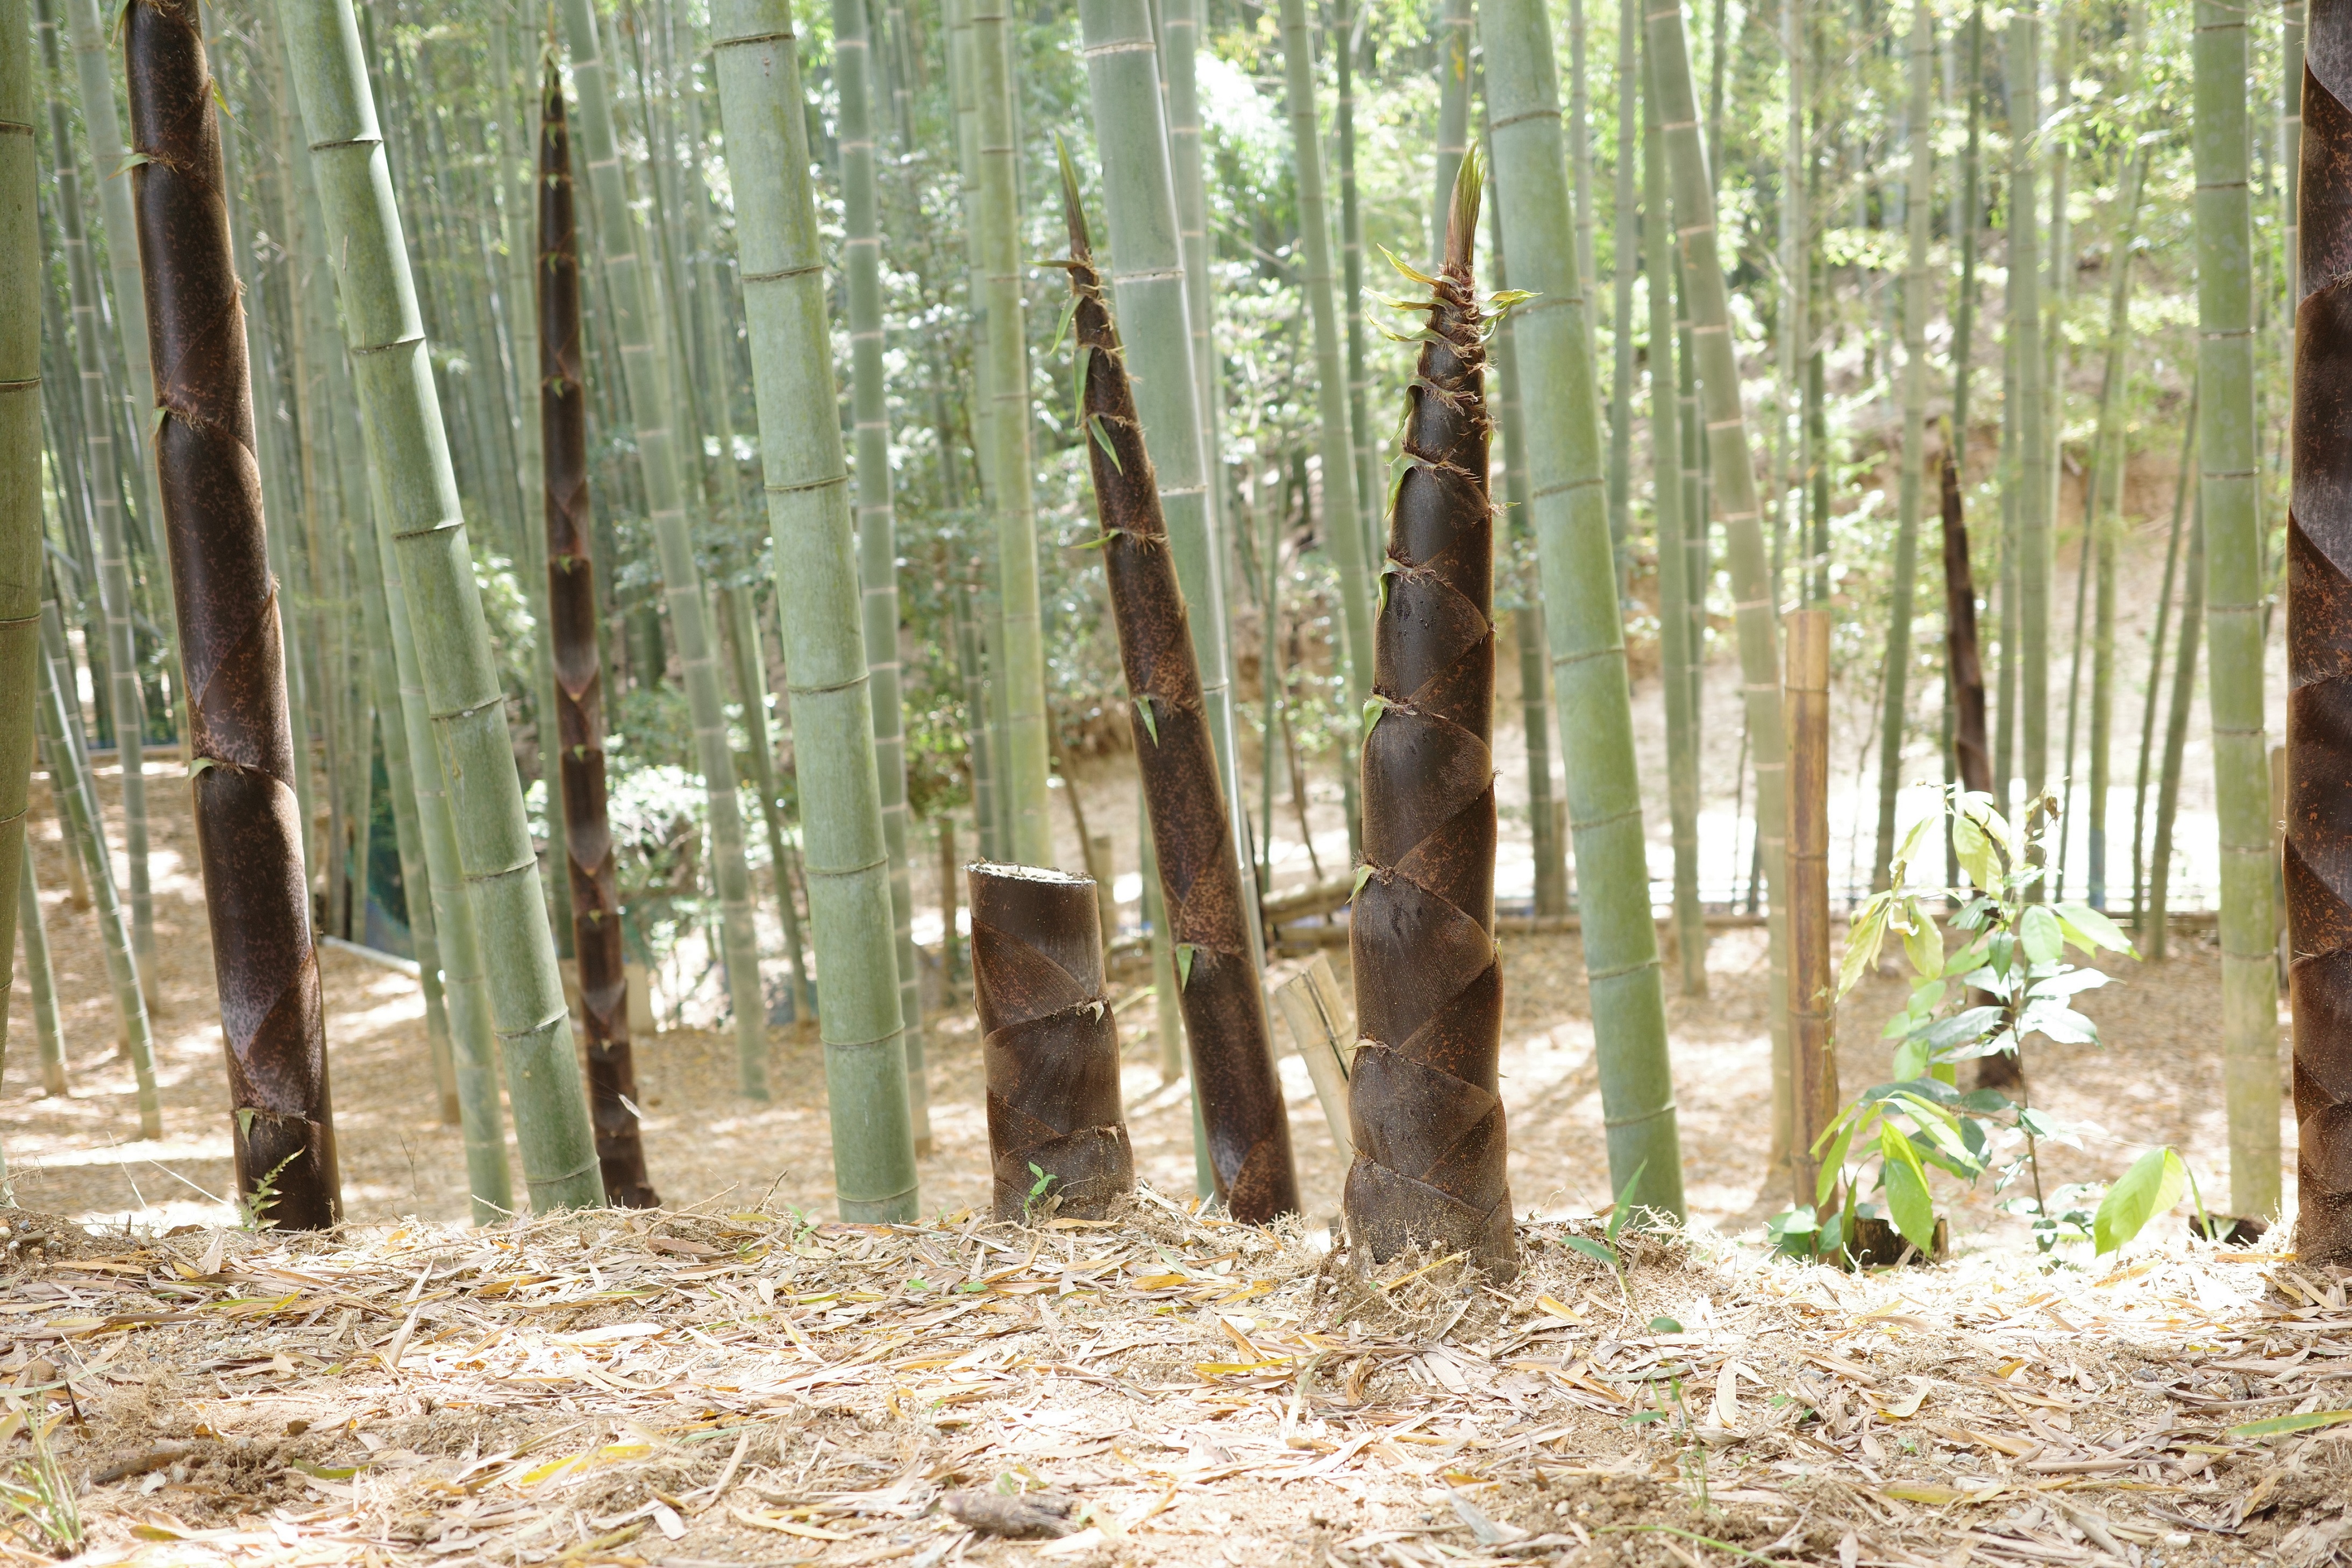 『ラーメンを通じて社会貢献』京都のラーメン屋〈キラメキノトリ〉が社会問題となっている放置竹林を解決するために京都産メンマづくりにチャレンジする